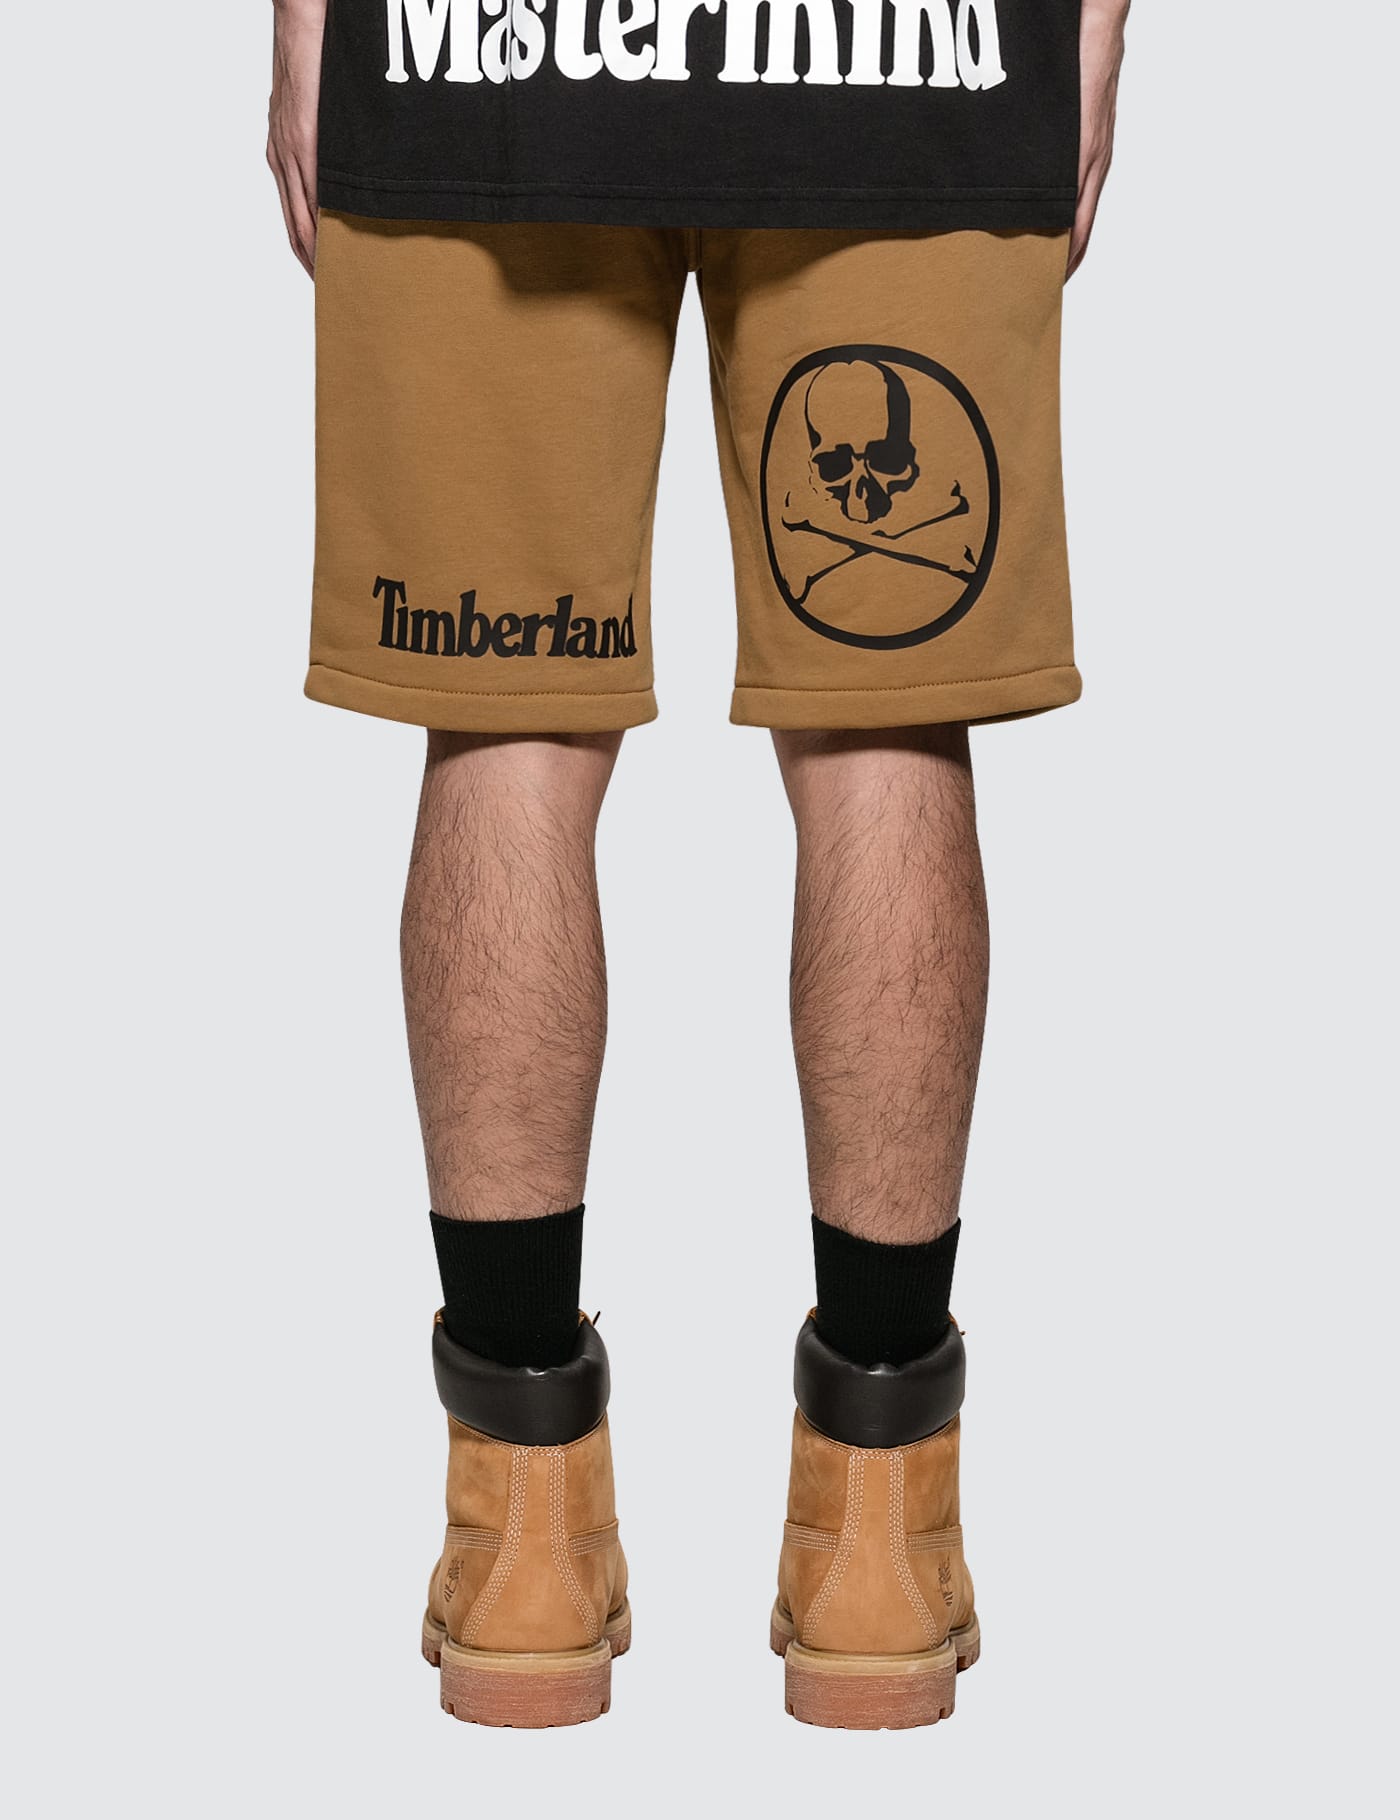 mastermind timberland shorts